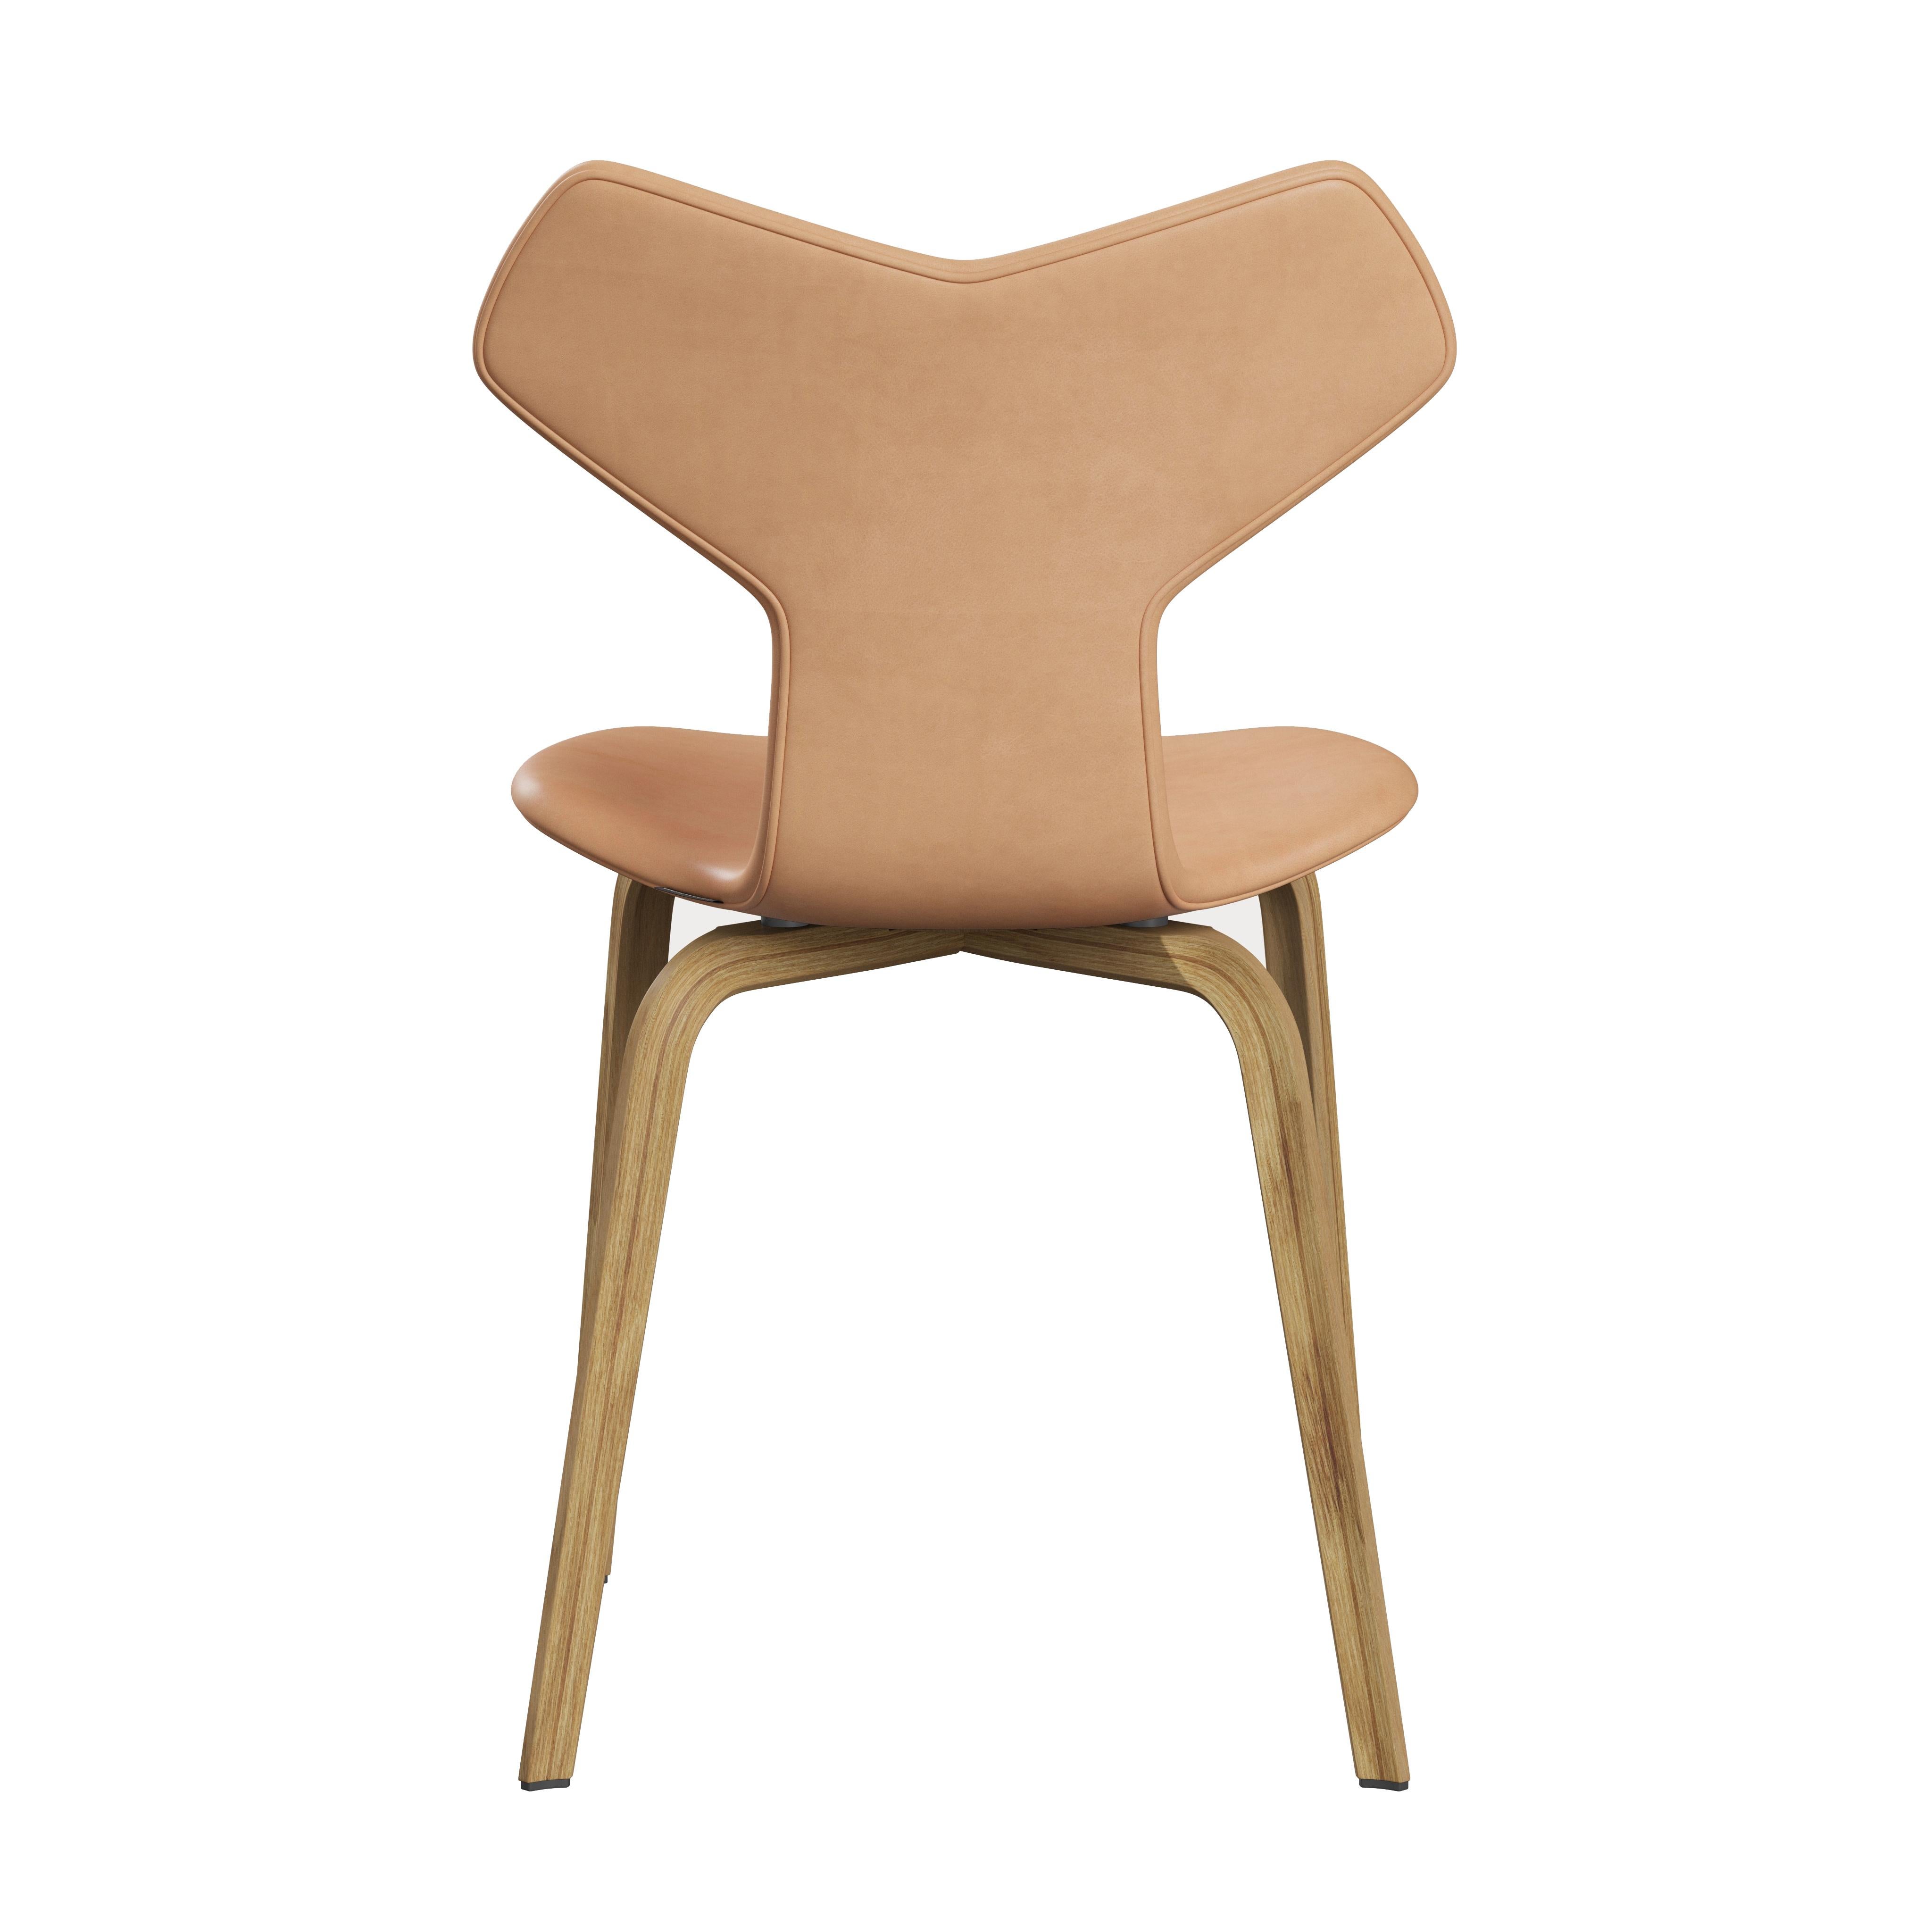 Danish Arne Jacobsen 'Grand Prix' Chair for Fritz Hansen in Full Leather Upholstery For Sale